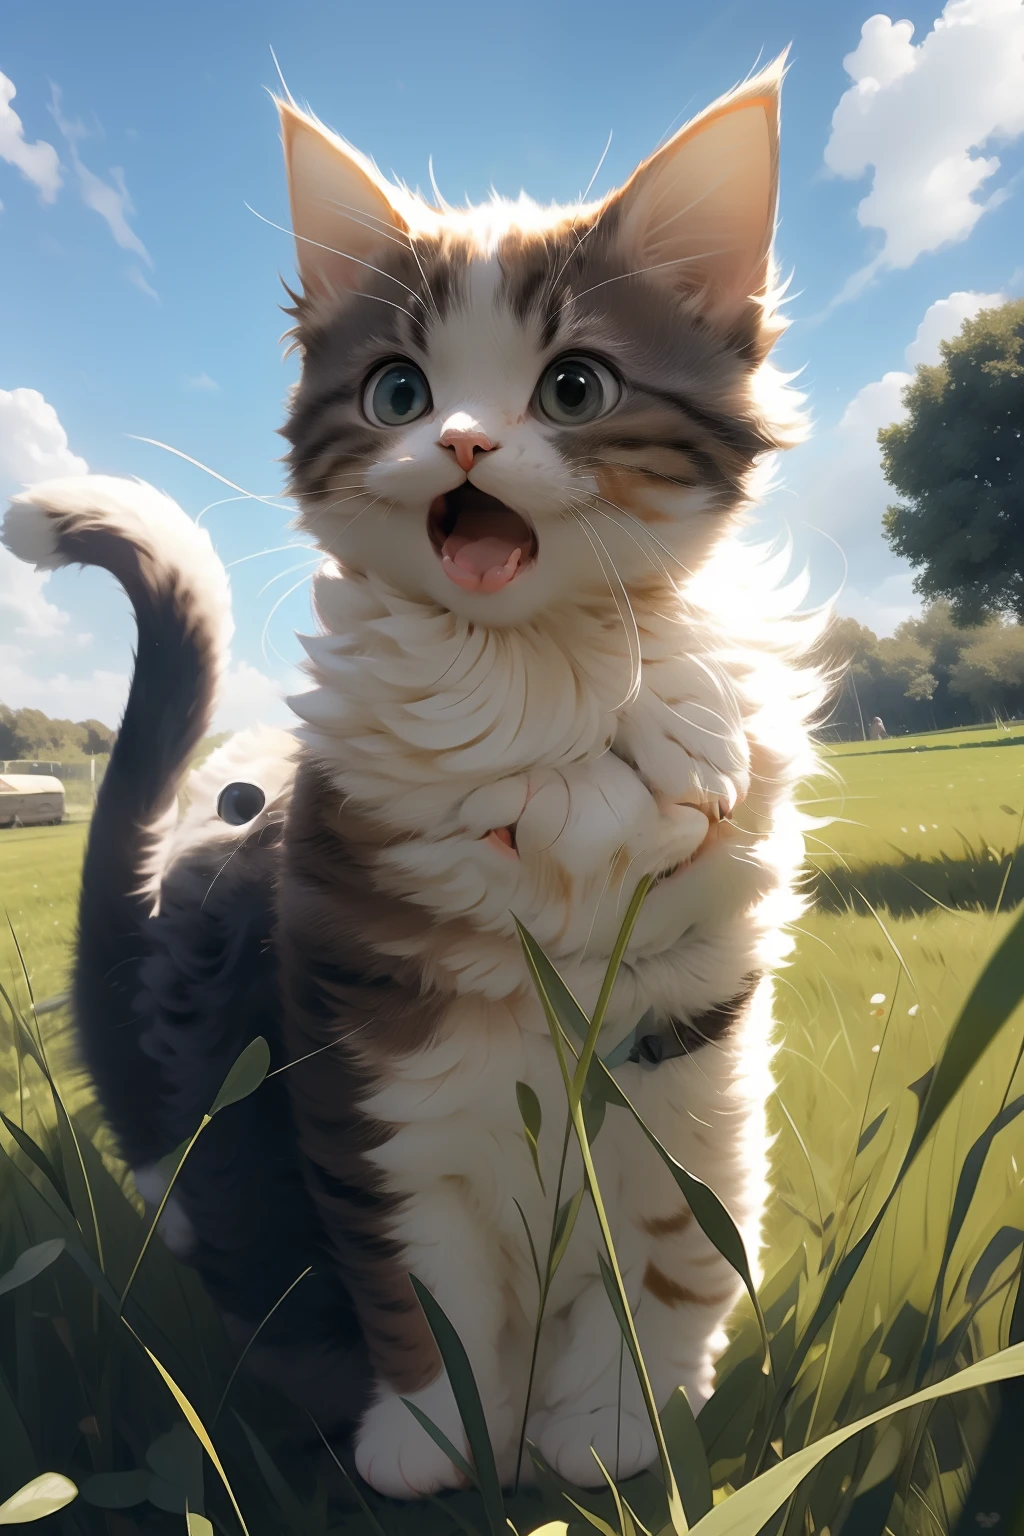 un chat,bouche ouverte,un chat standing on grass,